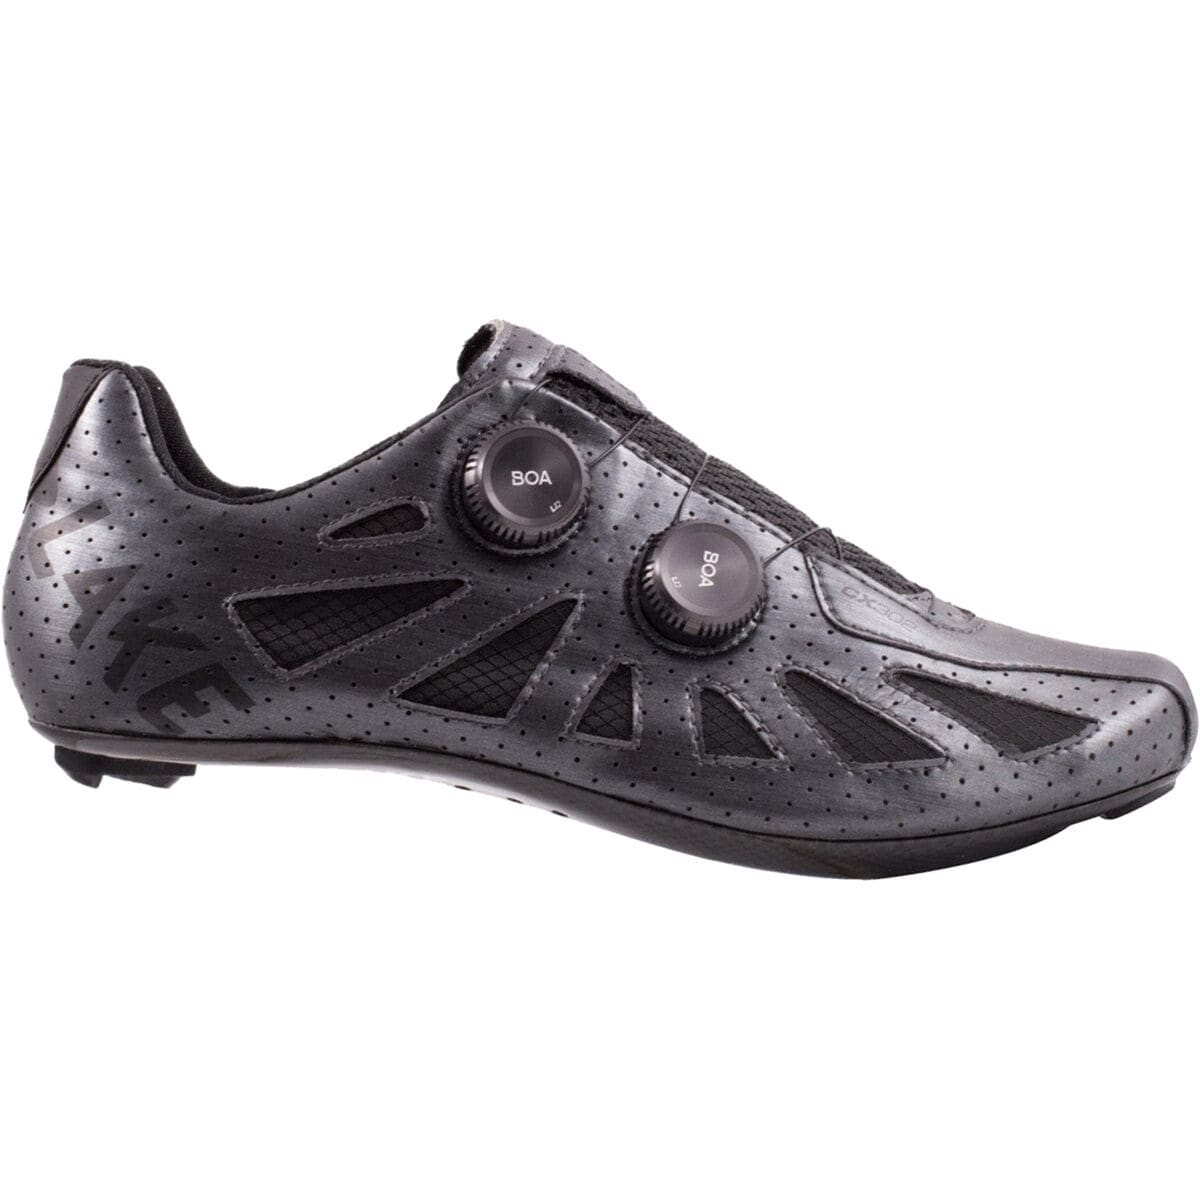 Lake CX302 Wide Cycling Shoe - Men's Metal/Black, 41.5